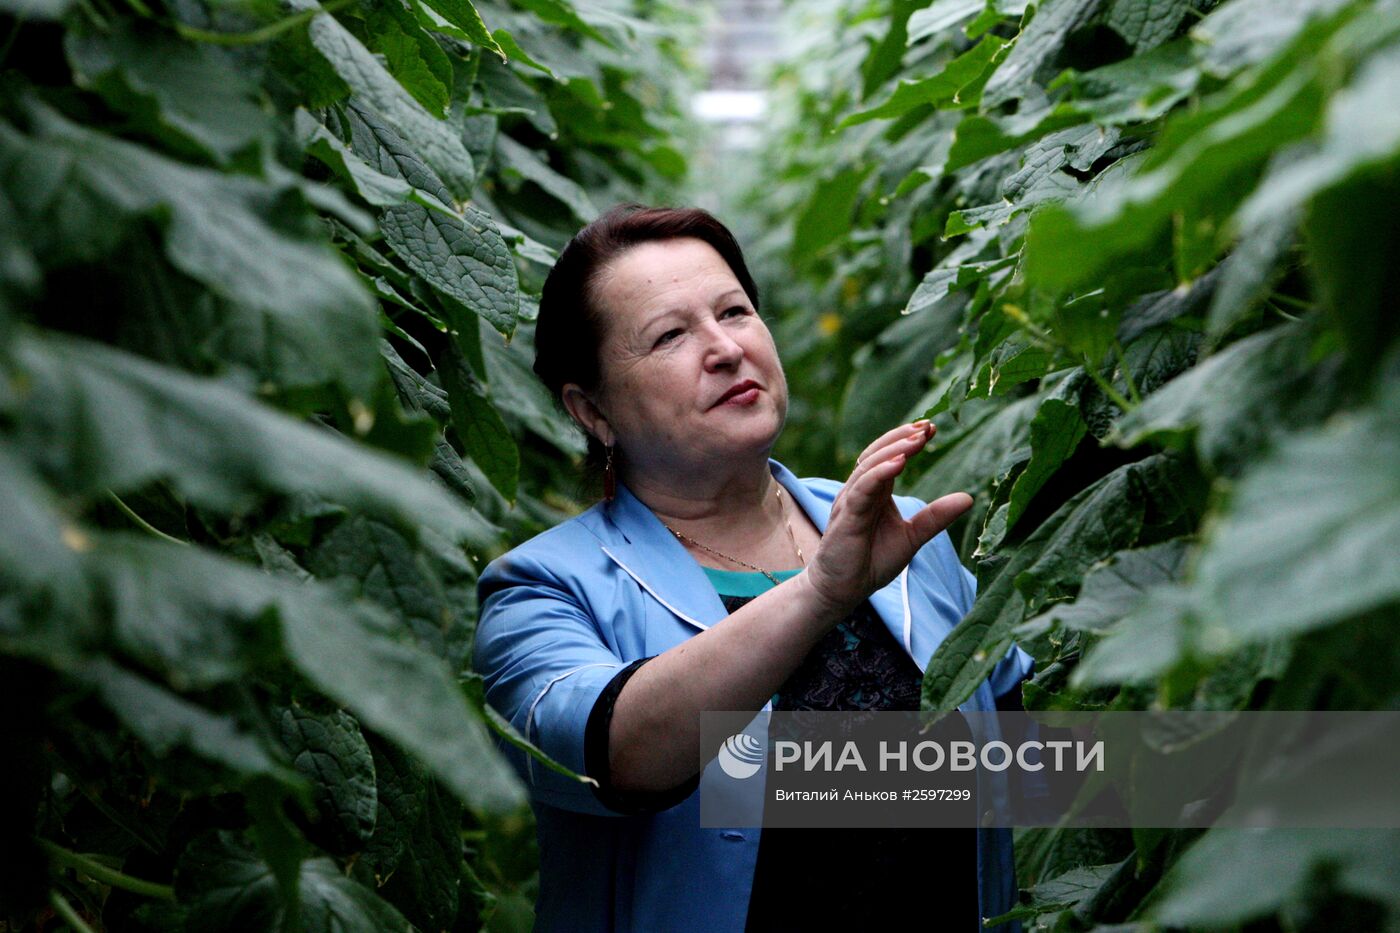 Выращивание овощей в тепличном хозяйстве Приморского края